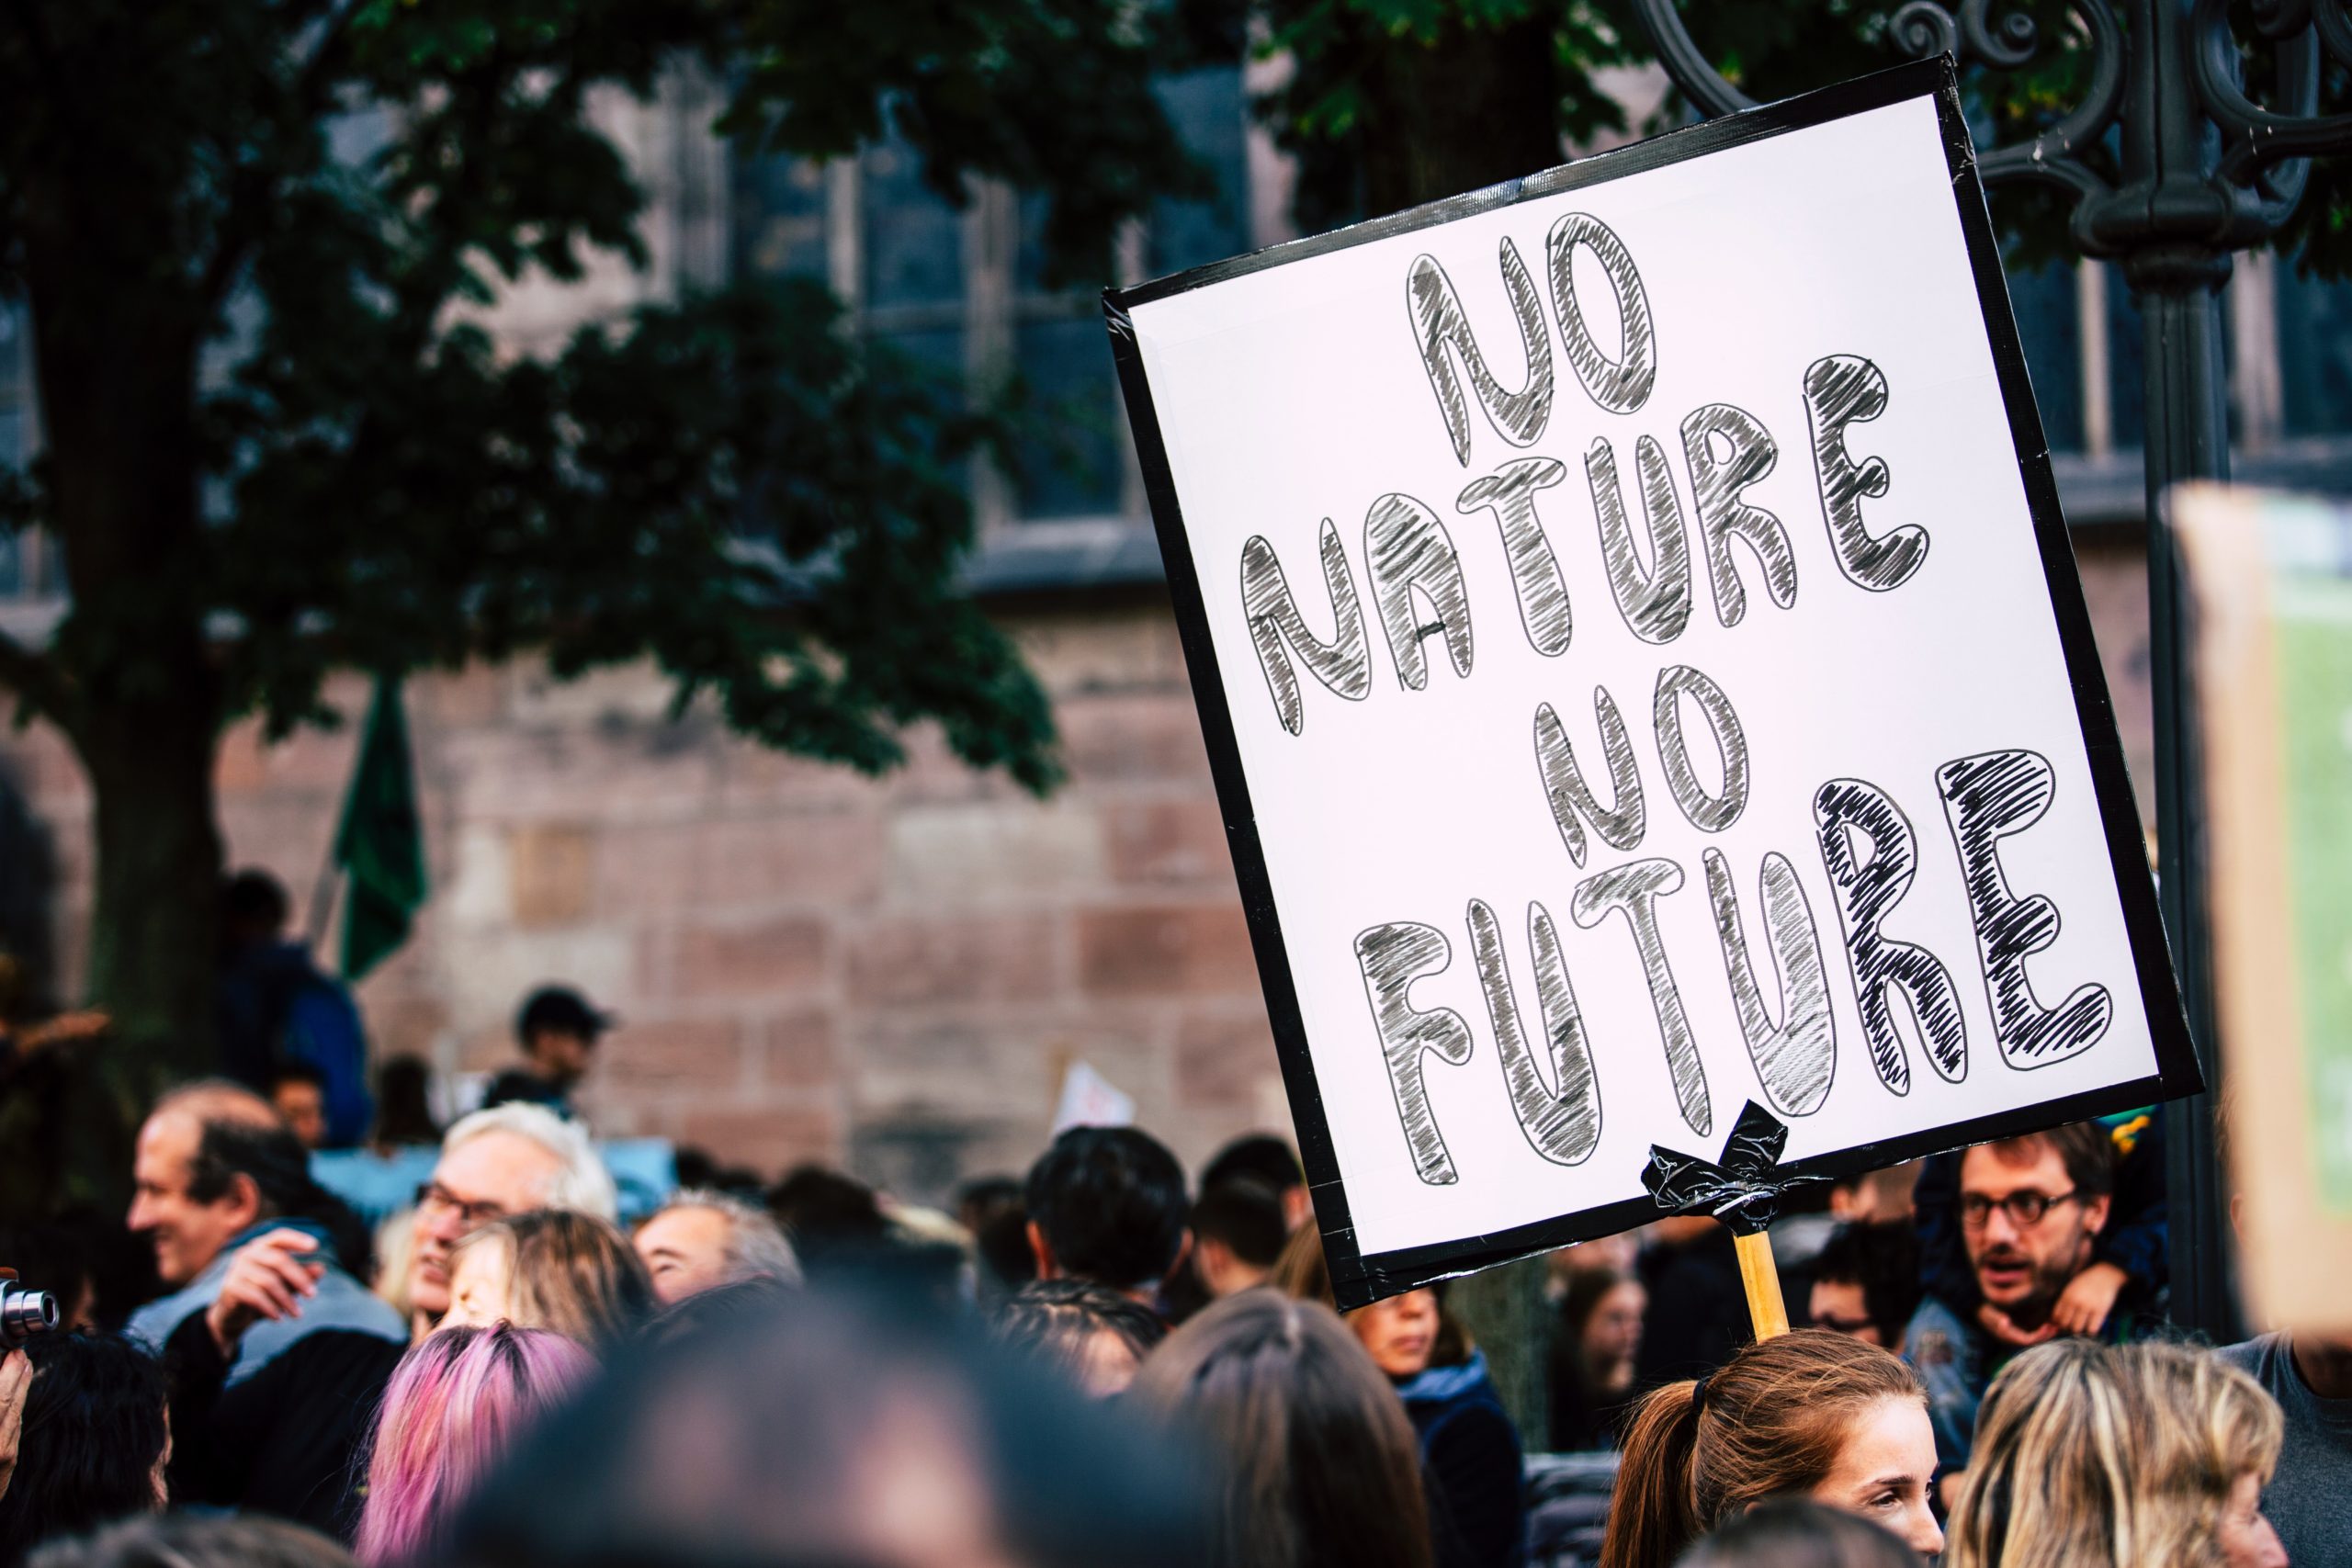  Projet de loi climatique : la parole aux jeunes